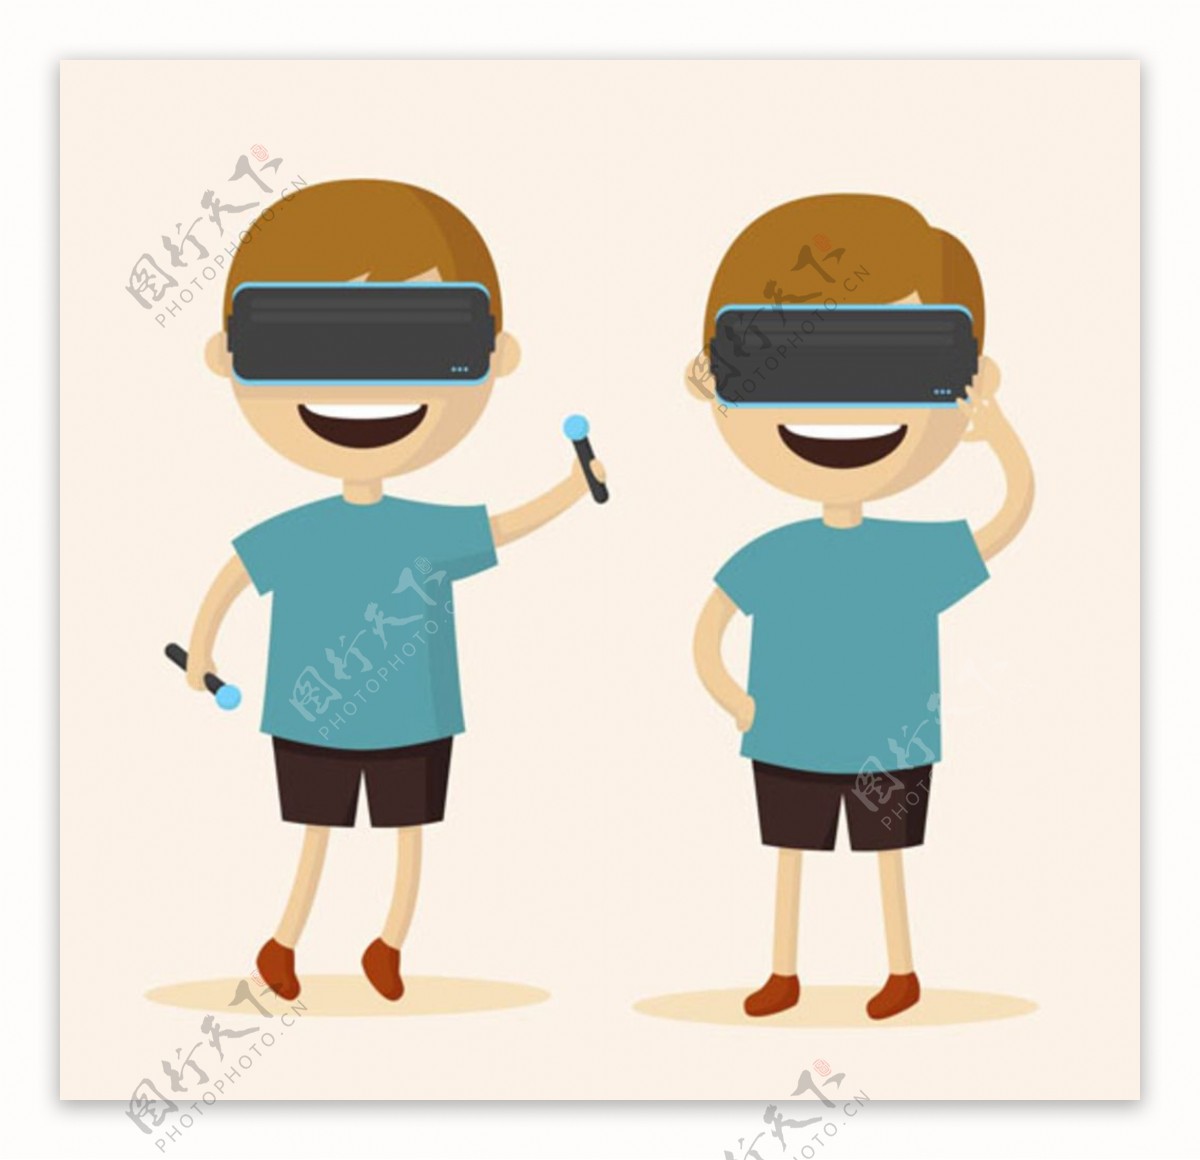 戴VR虚拟现实眼镜的男孩